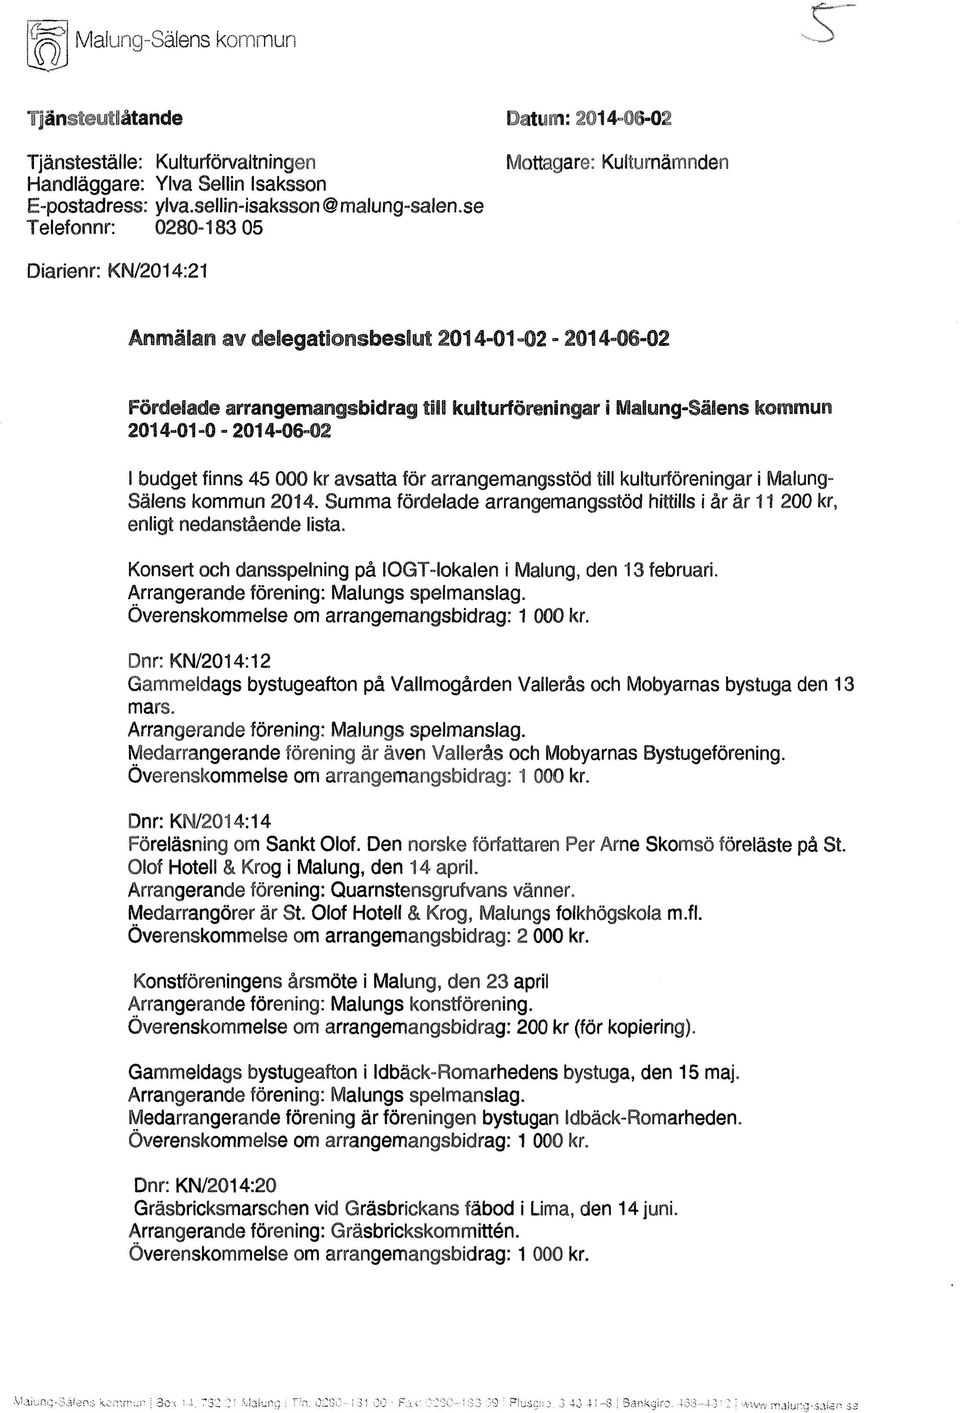 2014-01-0-2014-06-02 I budget finns 45 000 kr avsatta för arrangemangsstöd till kulturföreningar i Malung- Sälens kommun 2014.